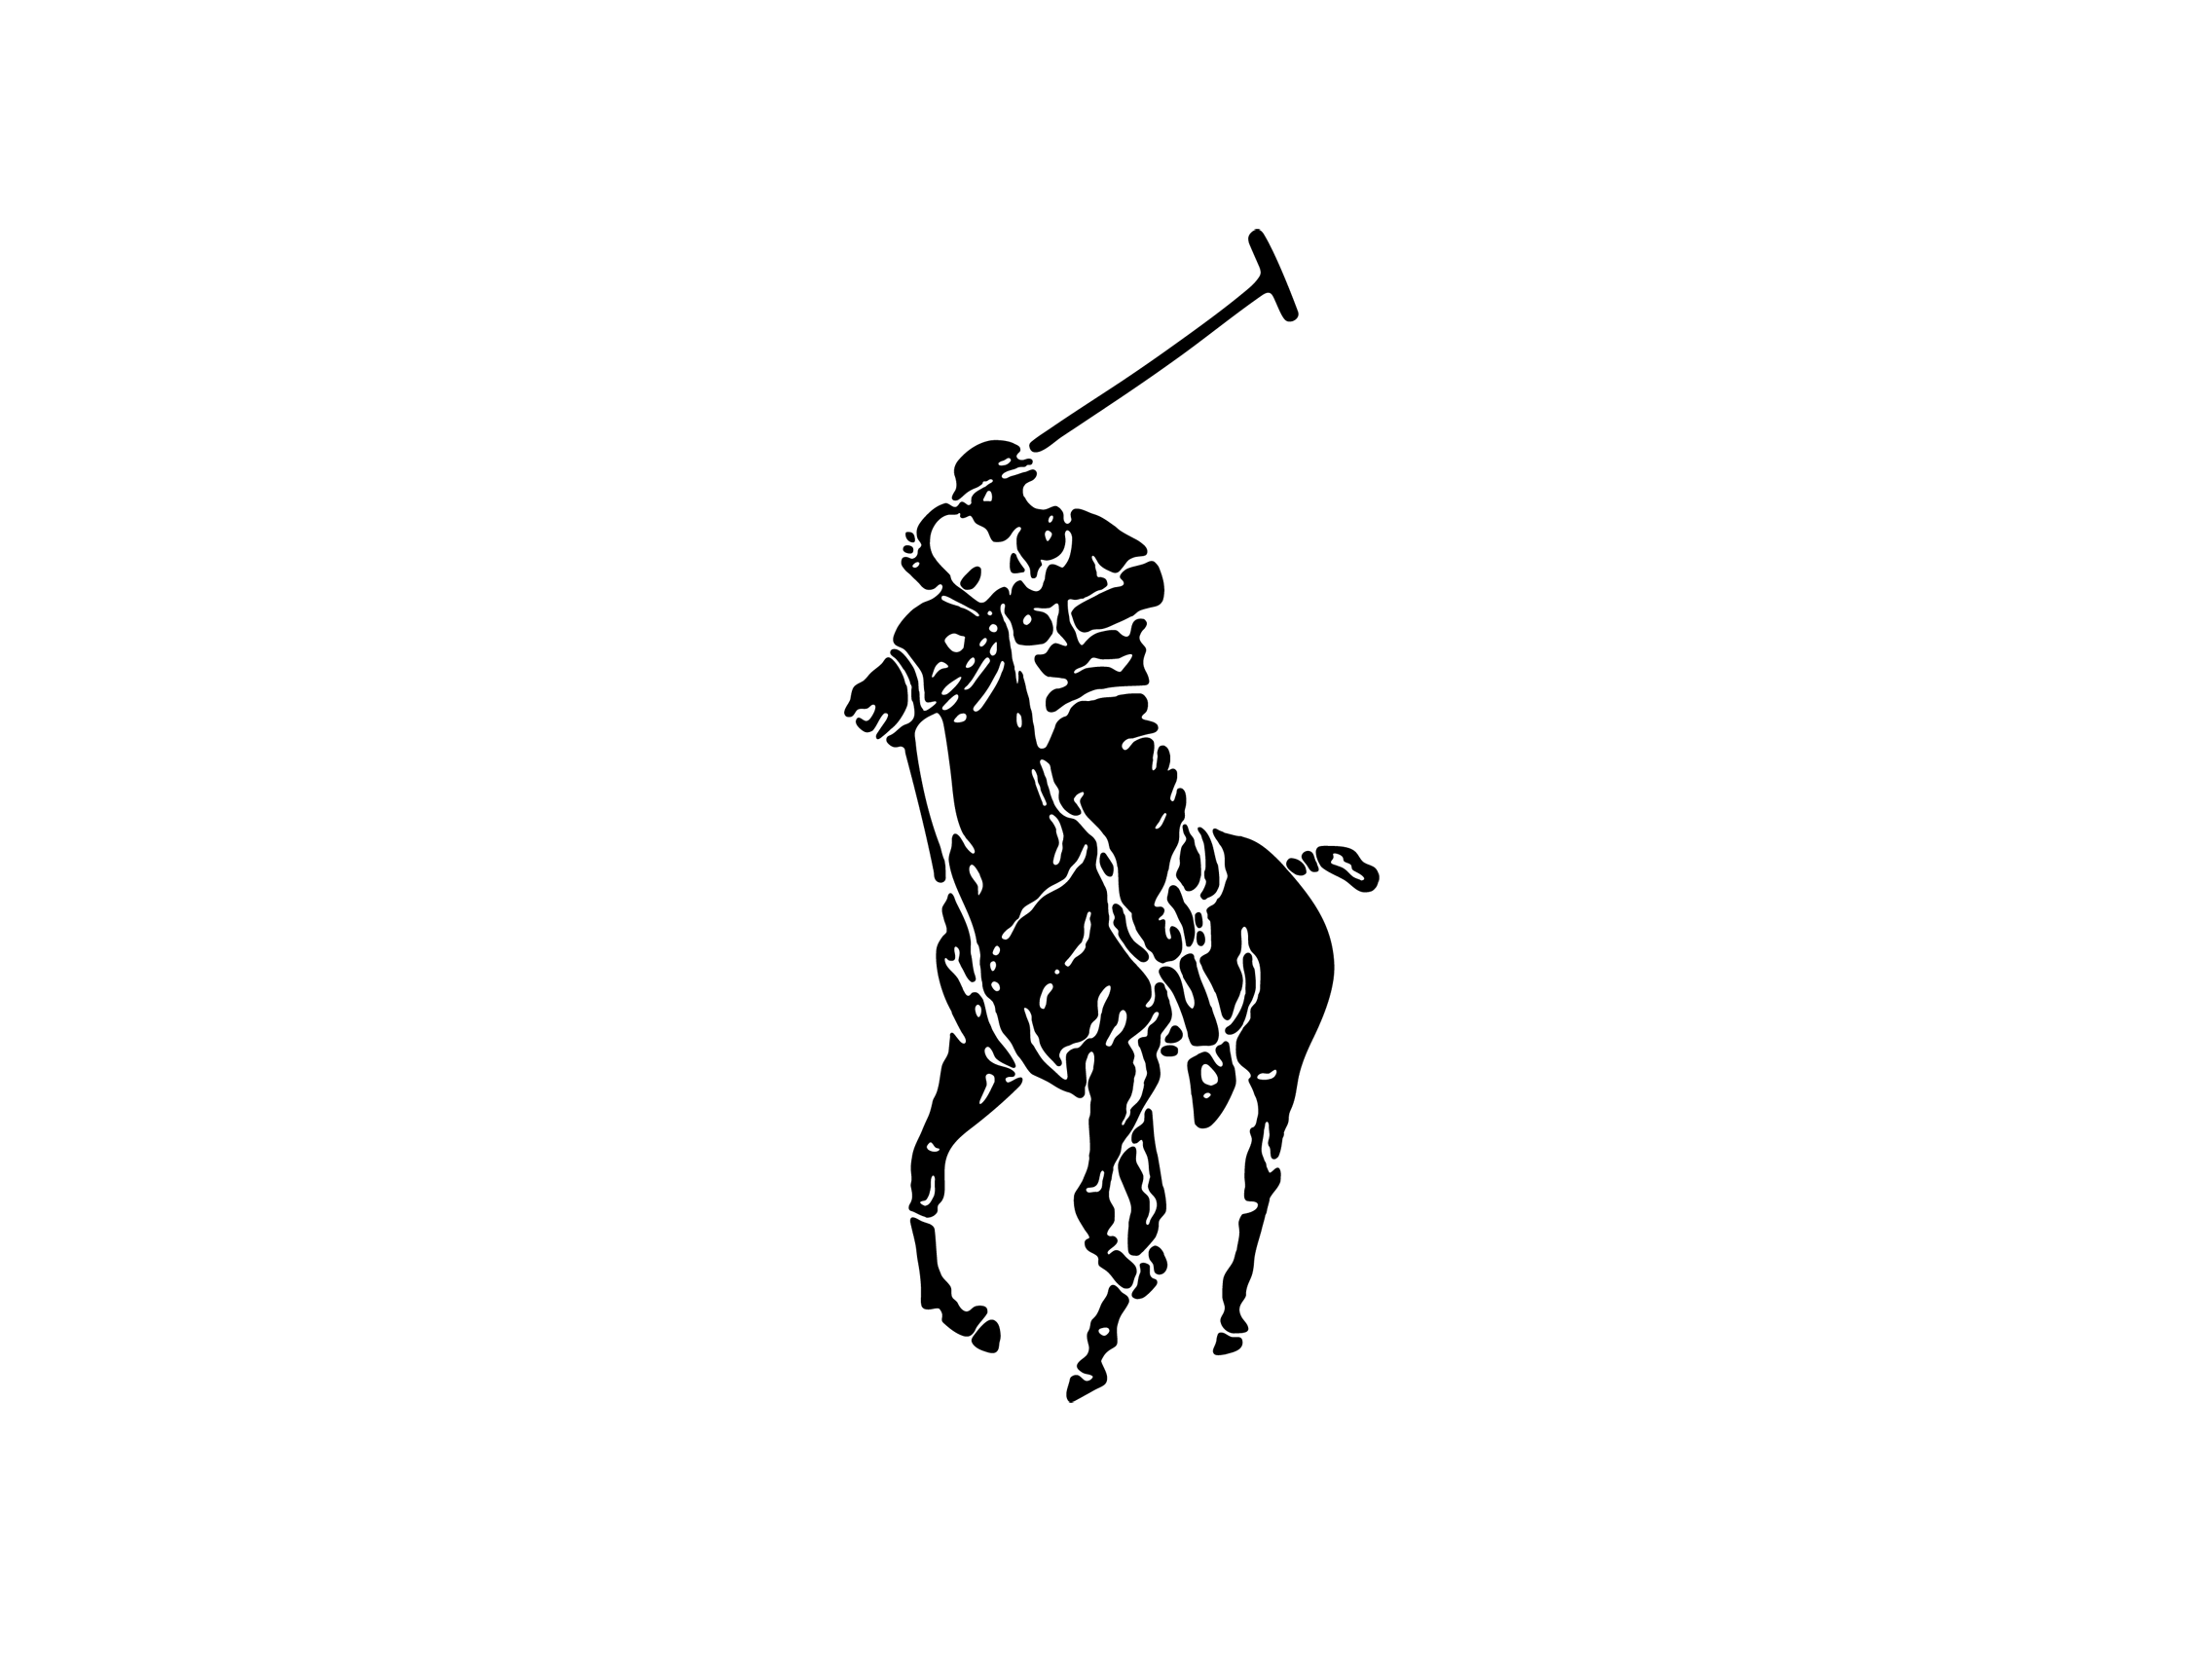 Copy of Ralph Lauren logo 2.png